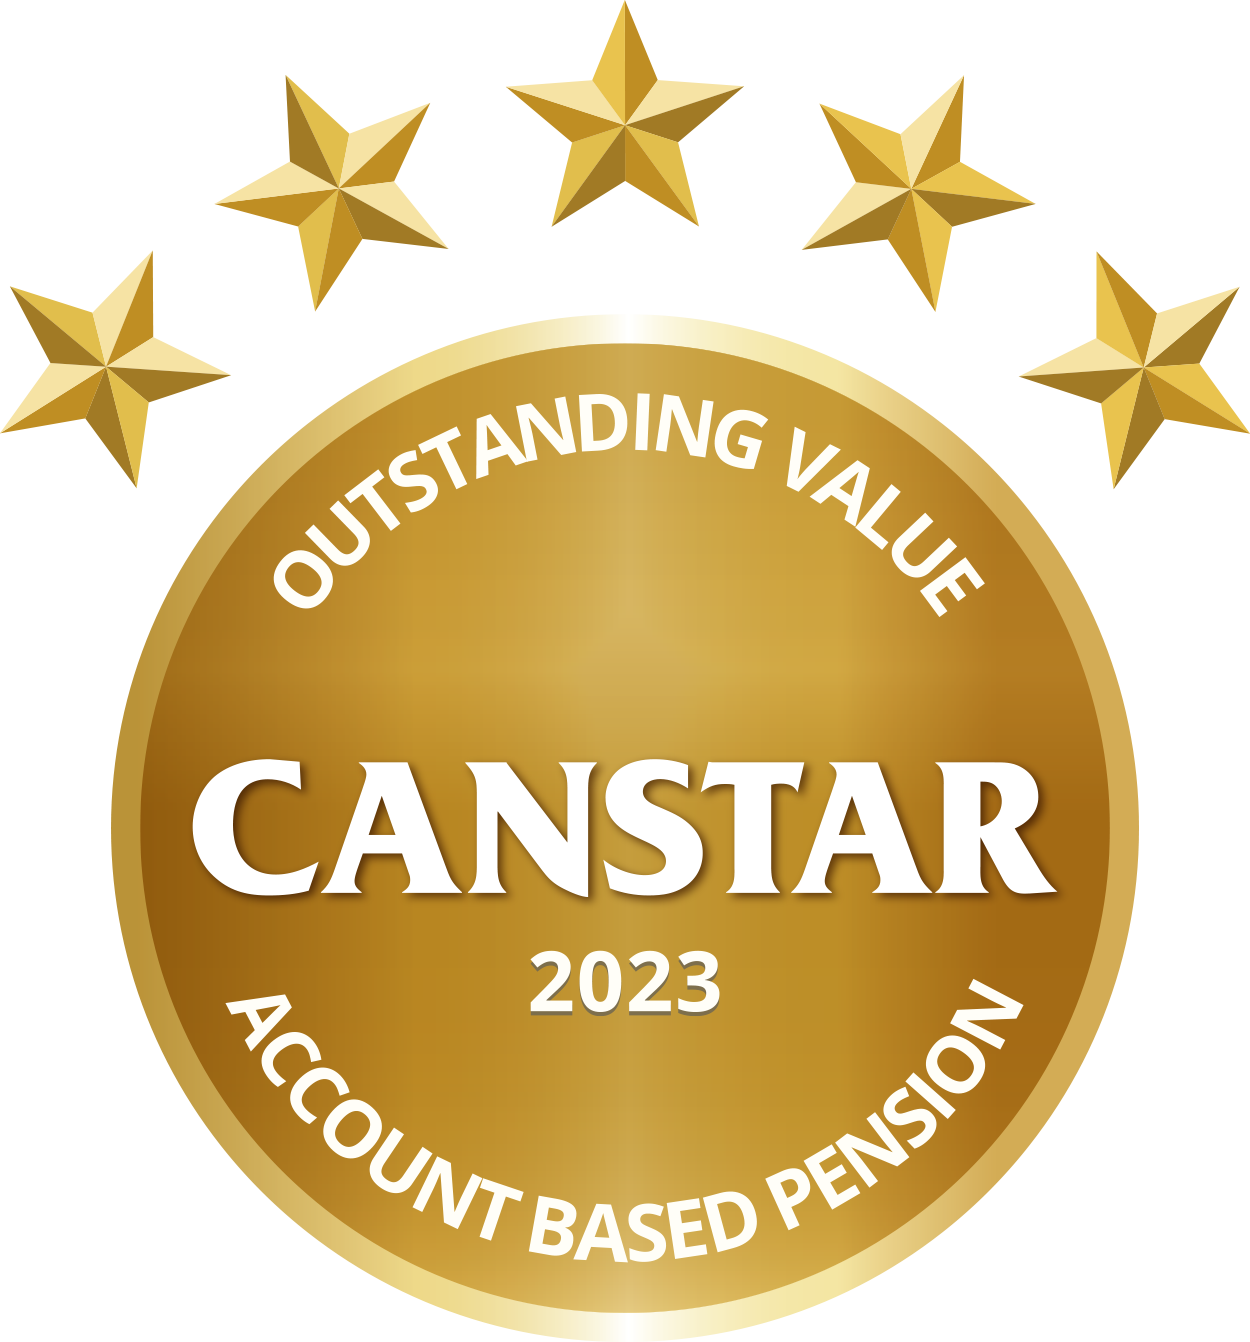 Canstar outstanding value 2023 Pension award logo